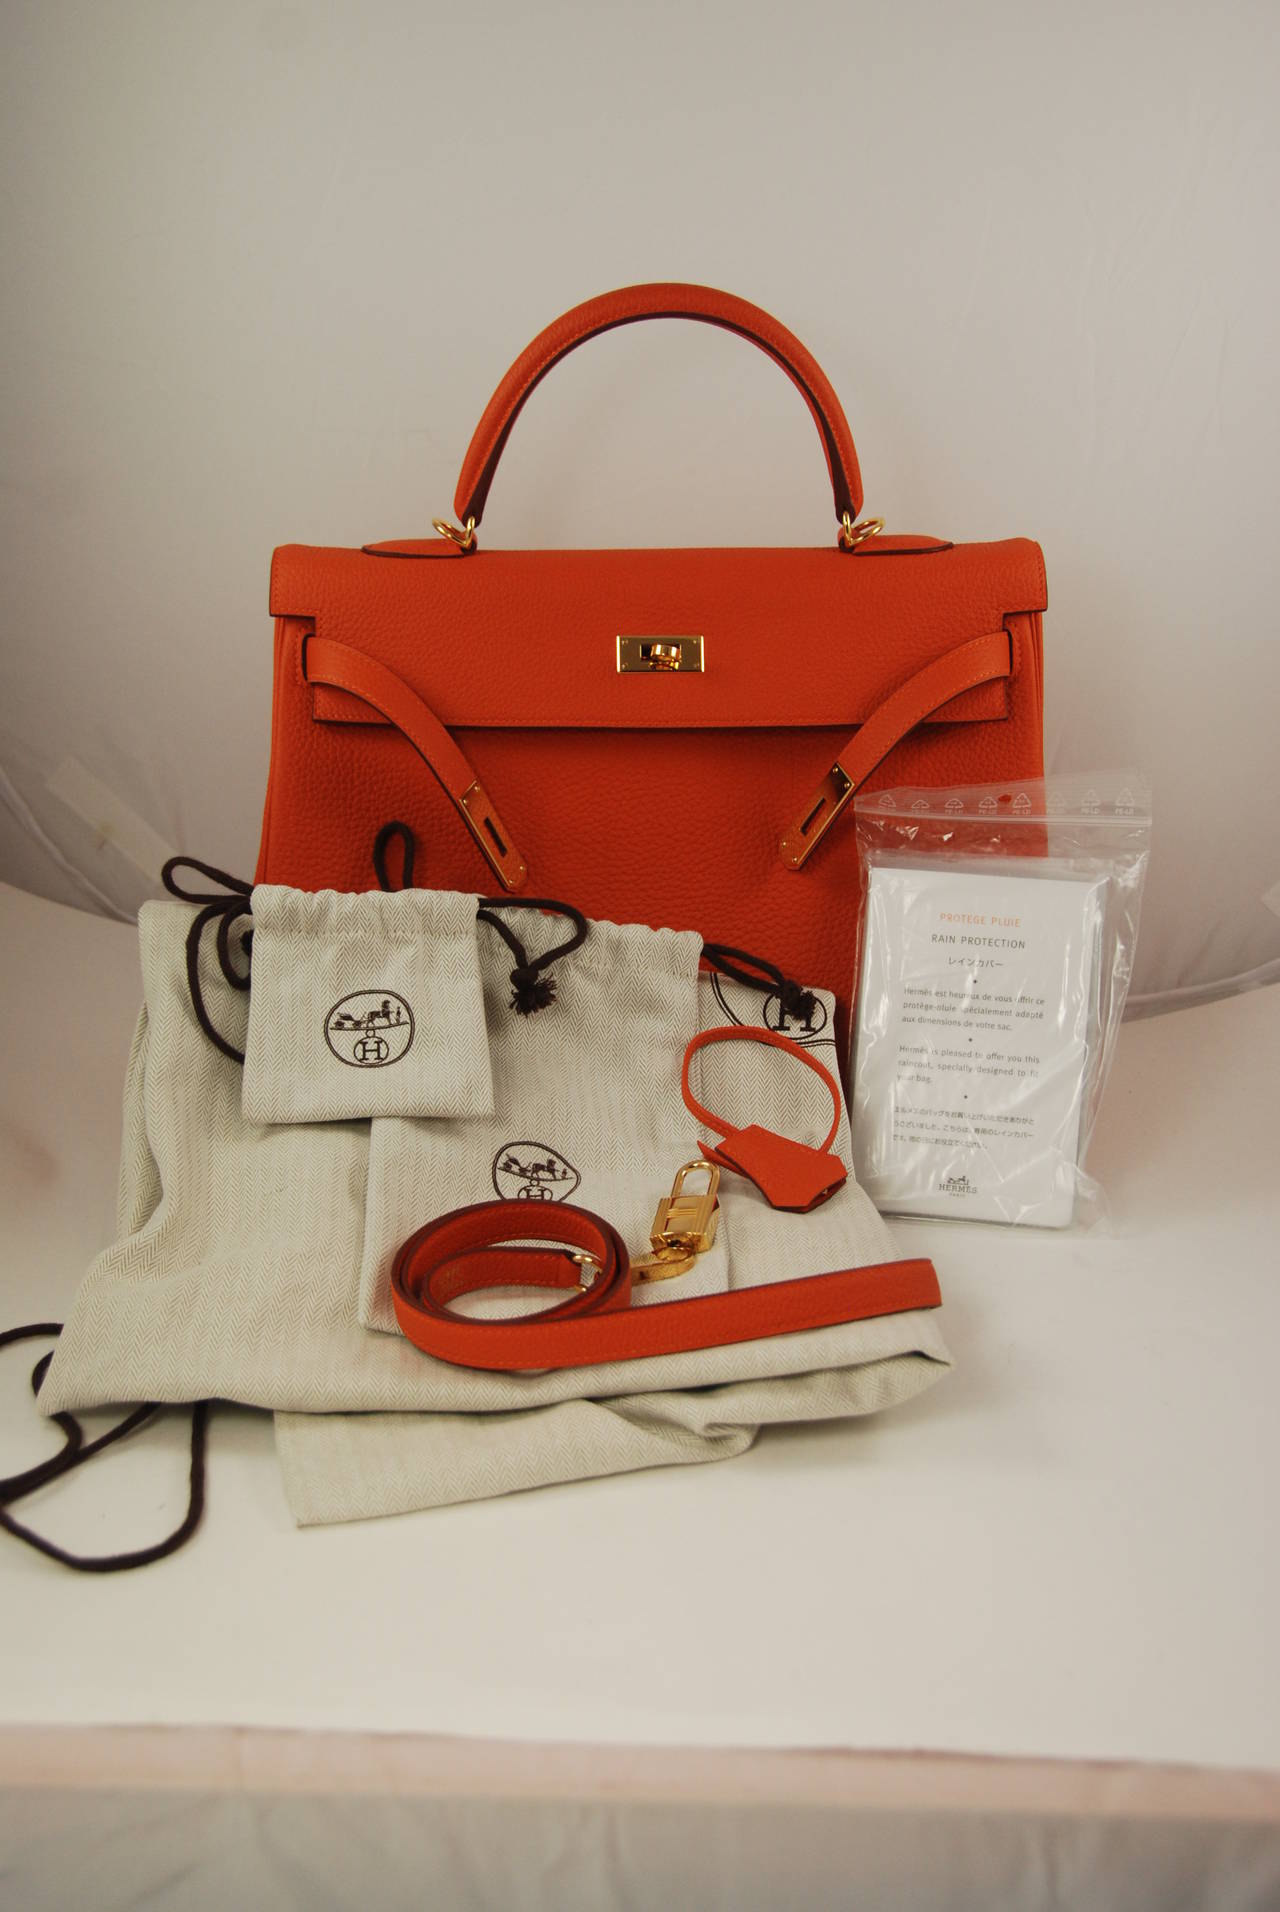 2014 Hermes 35 cm Orange Togo Leather Kelly Bag with Gold Hardware 5